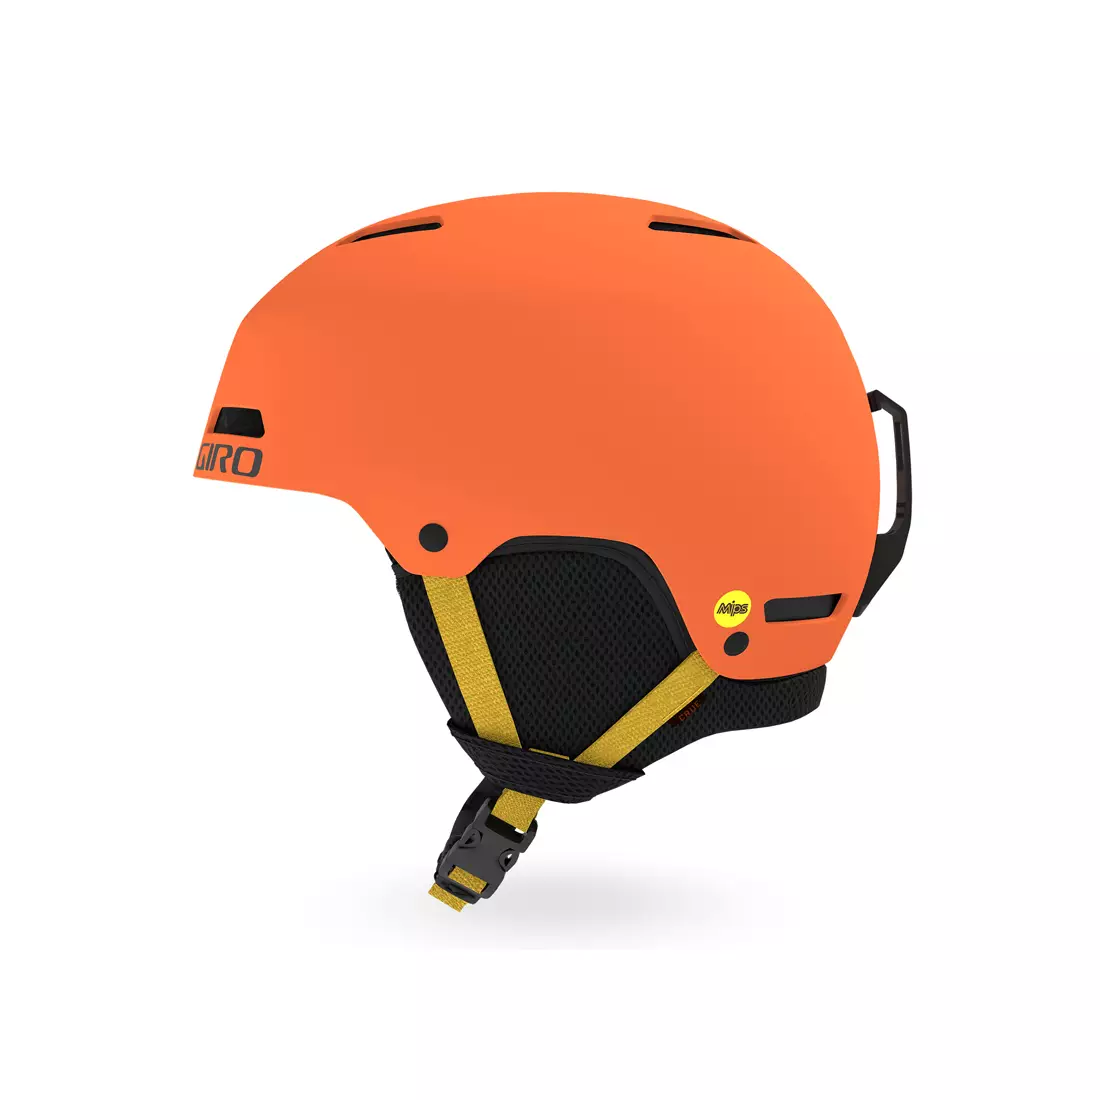 GIRO winter children's / junior helmet CRUE MIPS matte deep orange GR-7105011